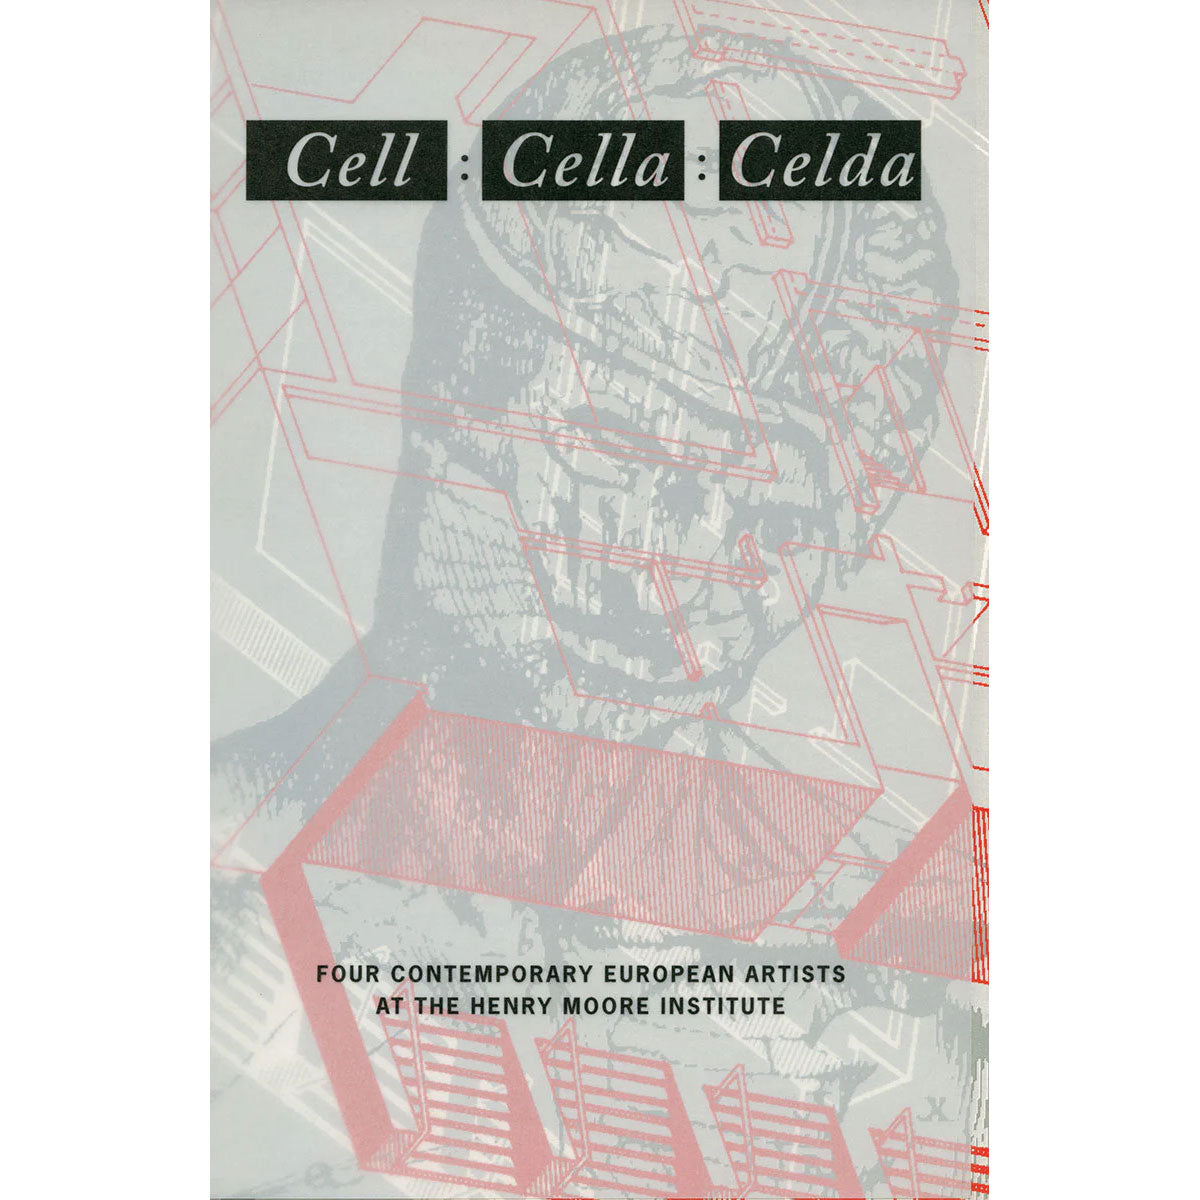 Cell : Cella : Celda